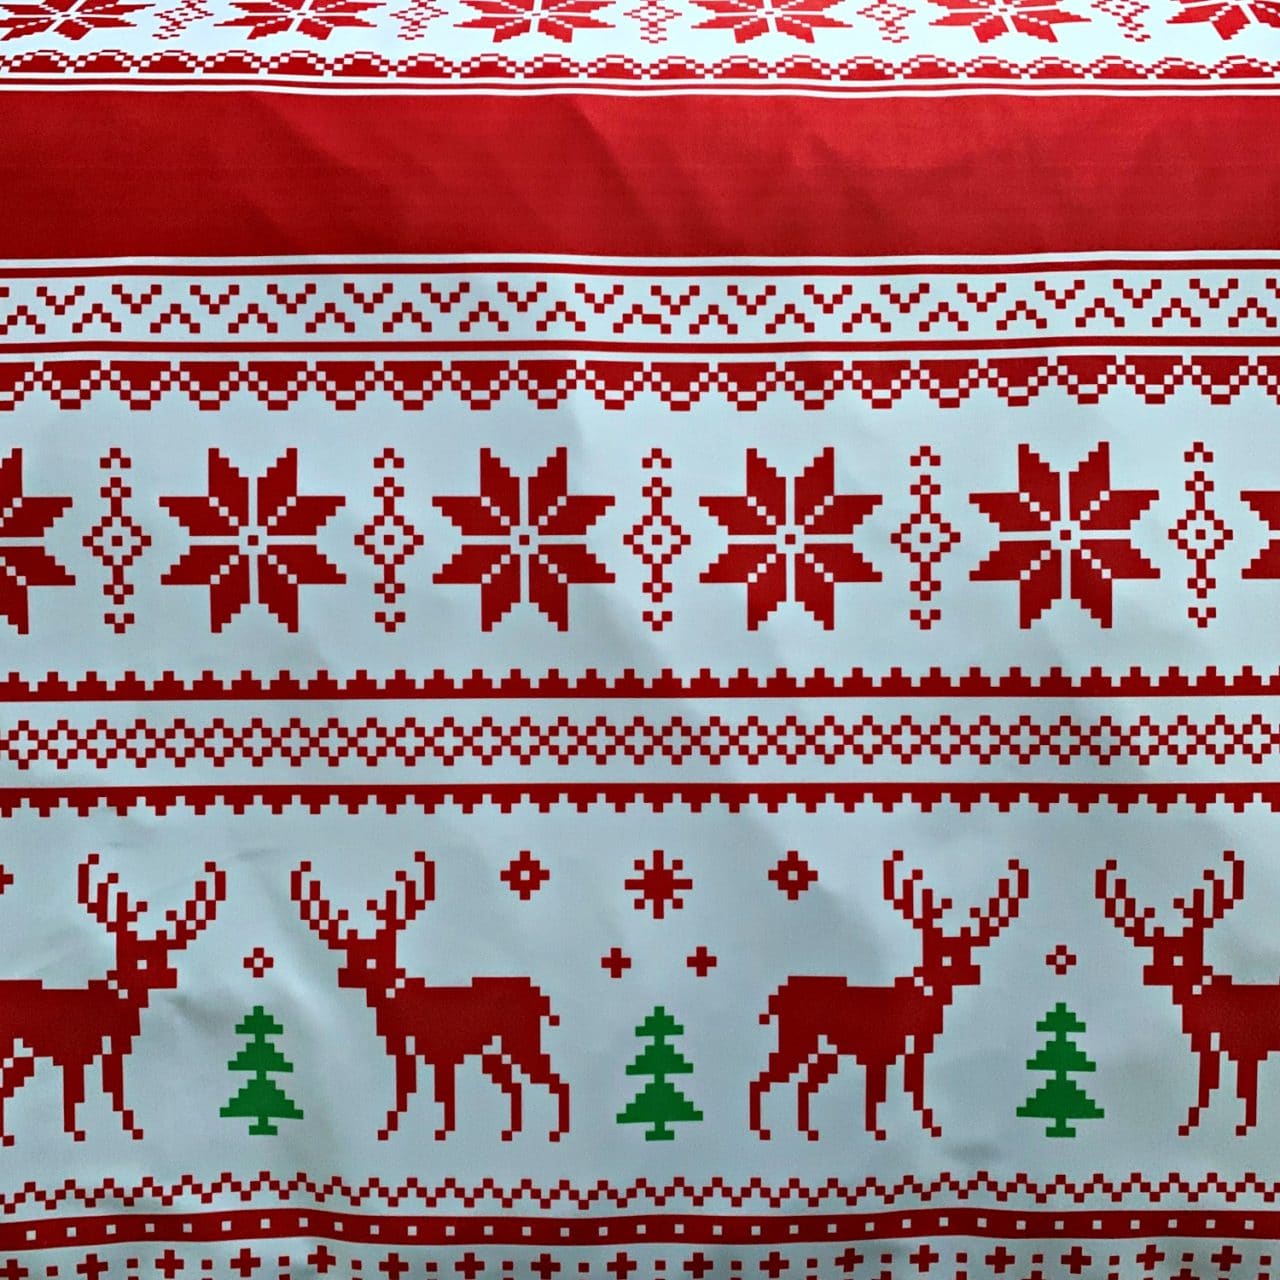 Christmas Sweater - Multi